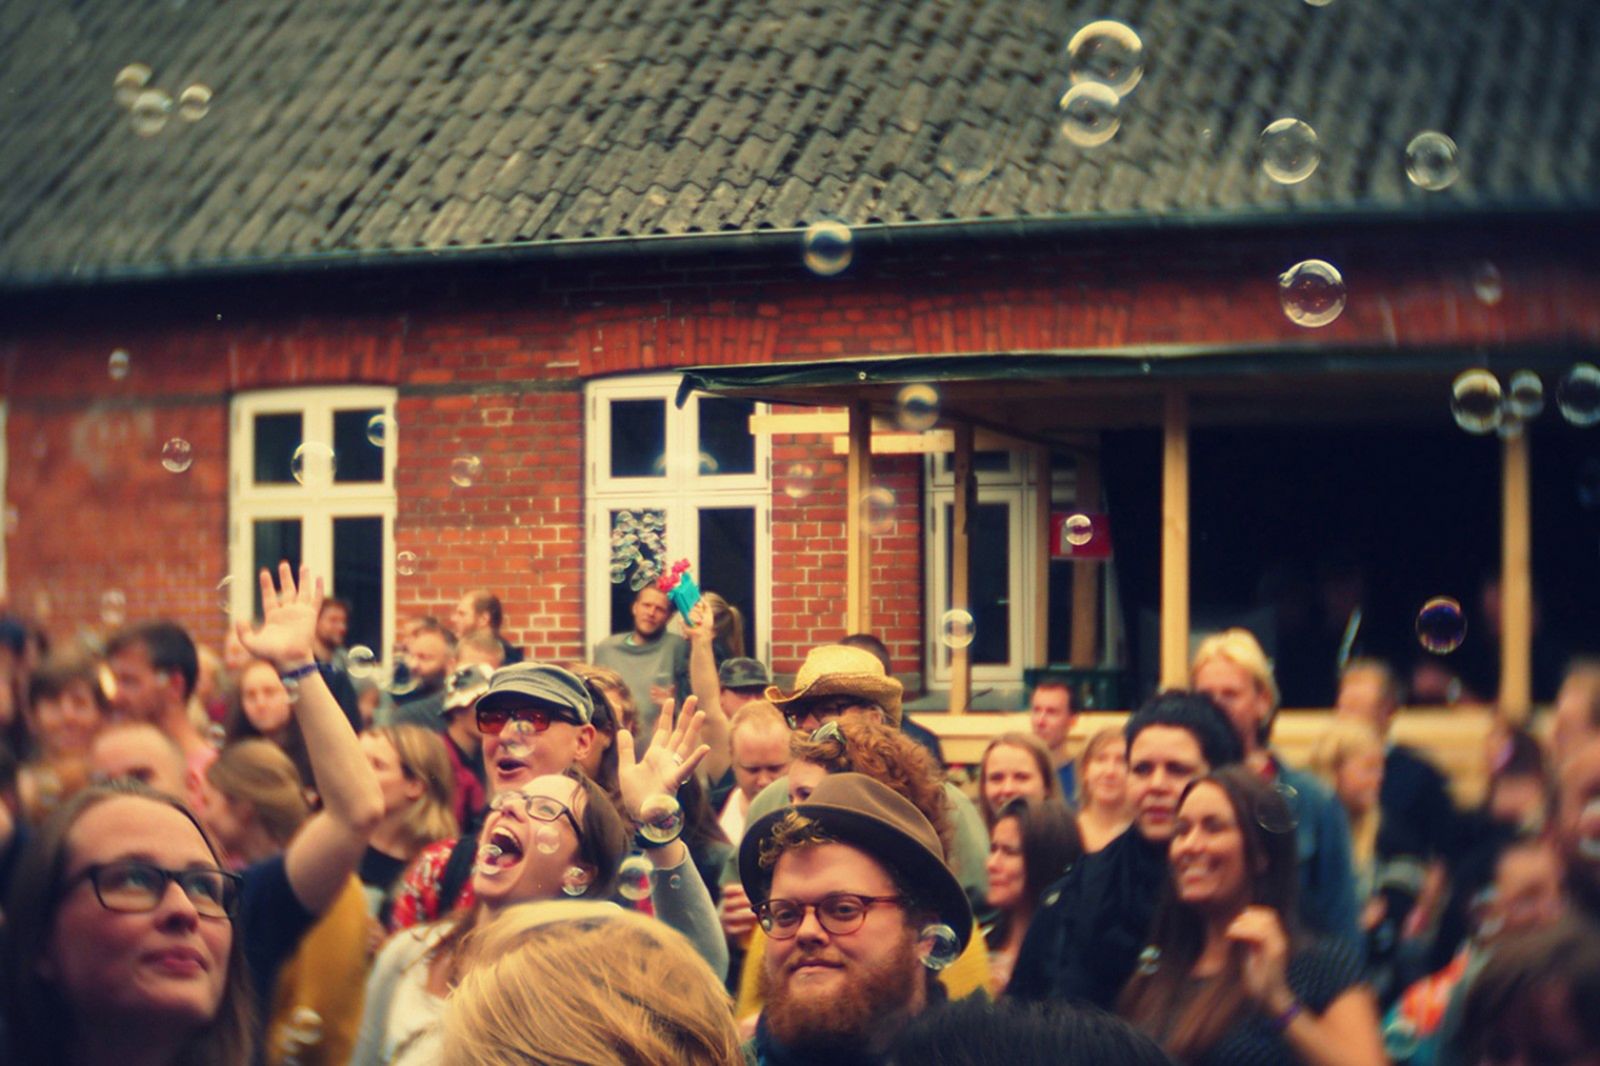 Pede B og Aarhus Jazz Orchestra skal til Danmarks Grimmeste Privatfest</br>GrimFest startede som en stor havefest med 500 gæster på Grimhøj Gård. </br>Foto: Bjørn Giesenbauer